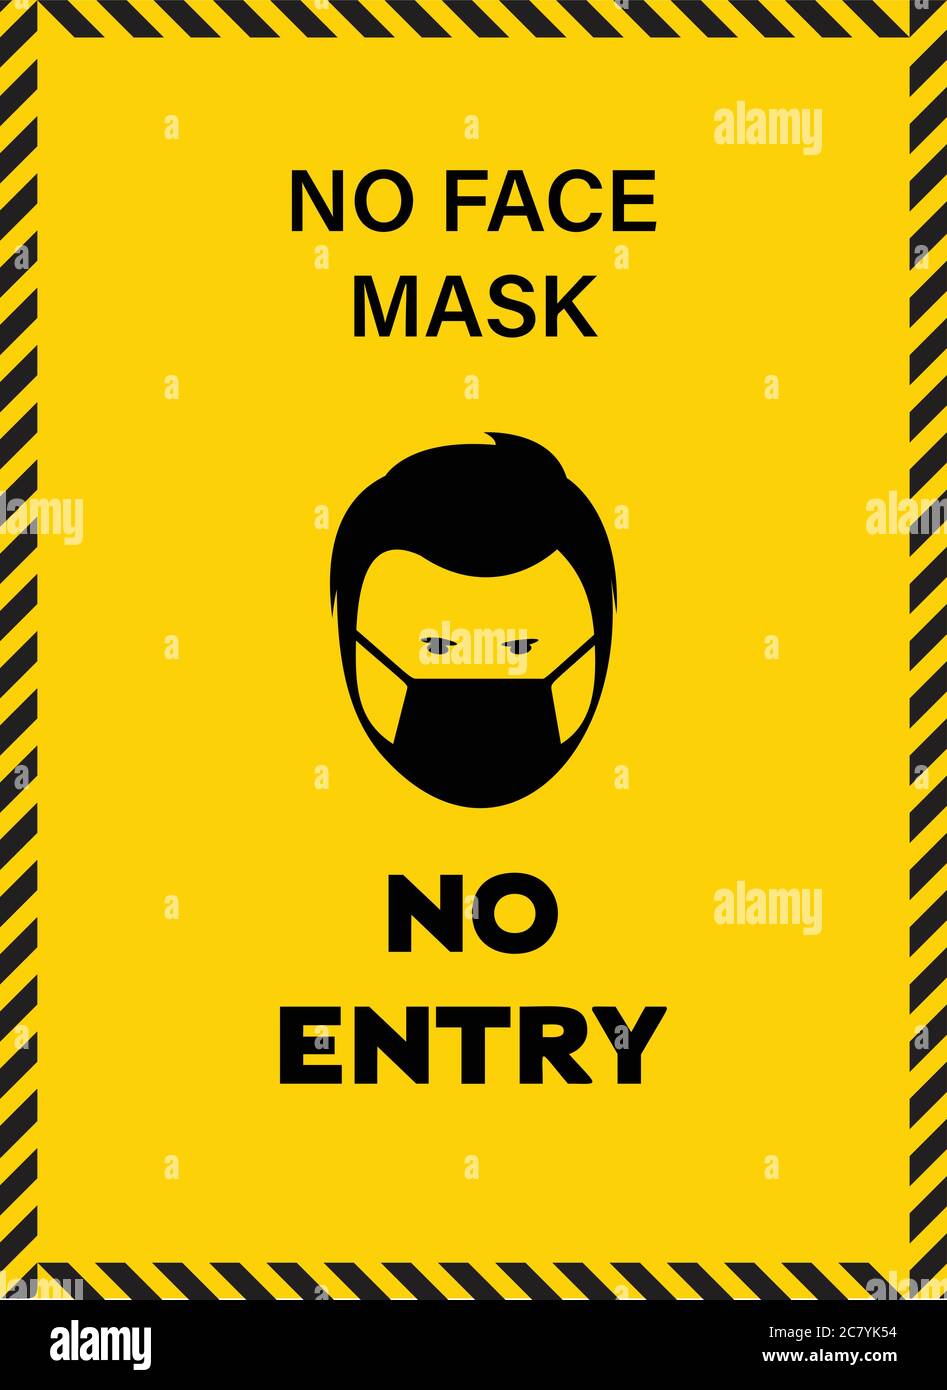 Aufkleber mit dem Text, No Face Mask kein Eintrag, Vektor-Illustration, Gelb und Schwarz Aufkleber für Gesichtsmaske tragen mit Gesichtsmaske Zeichen Stock Vektor